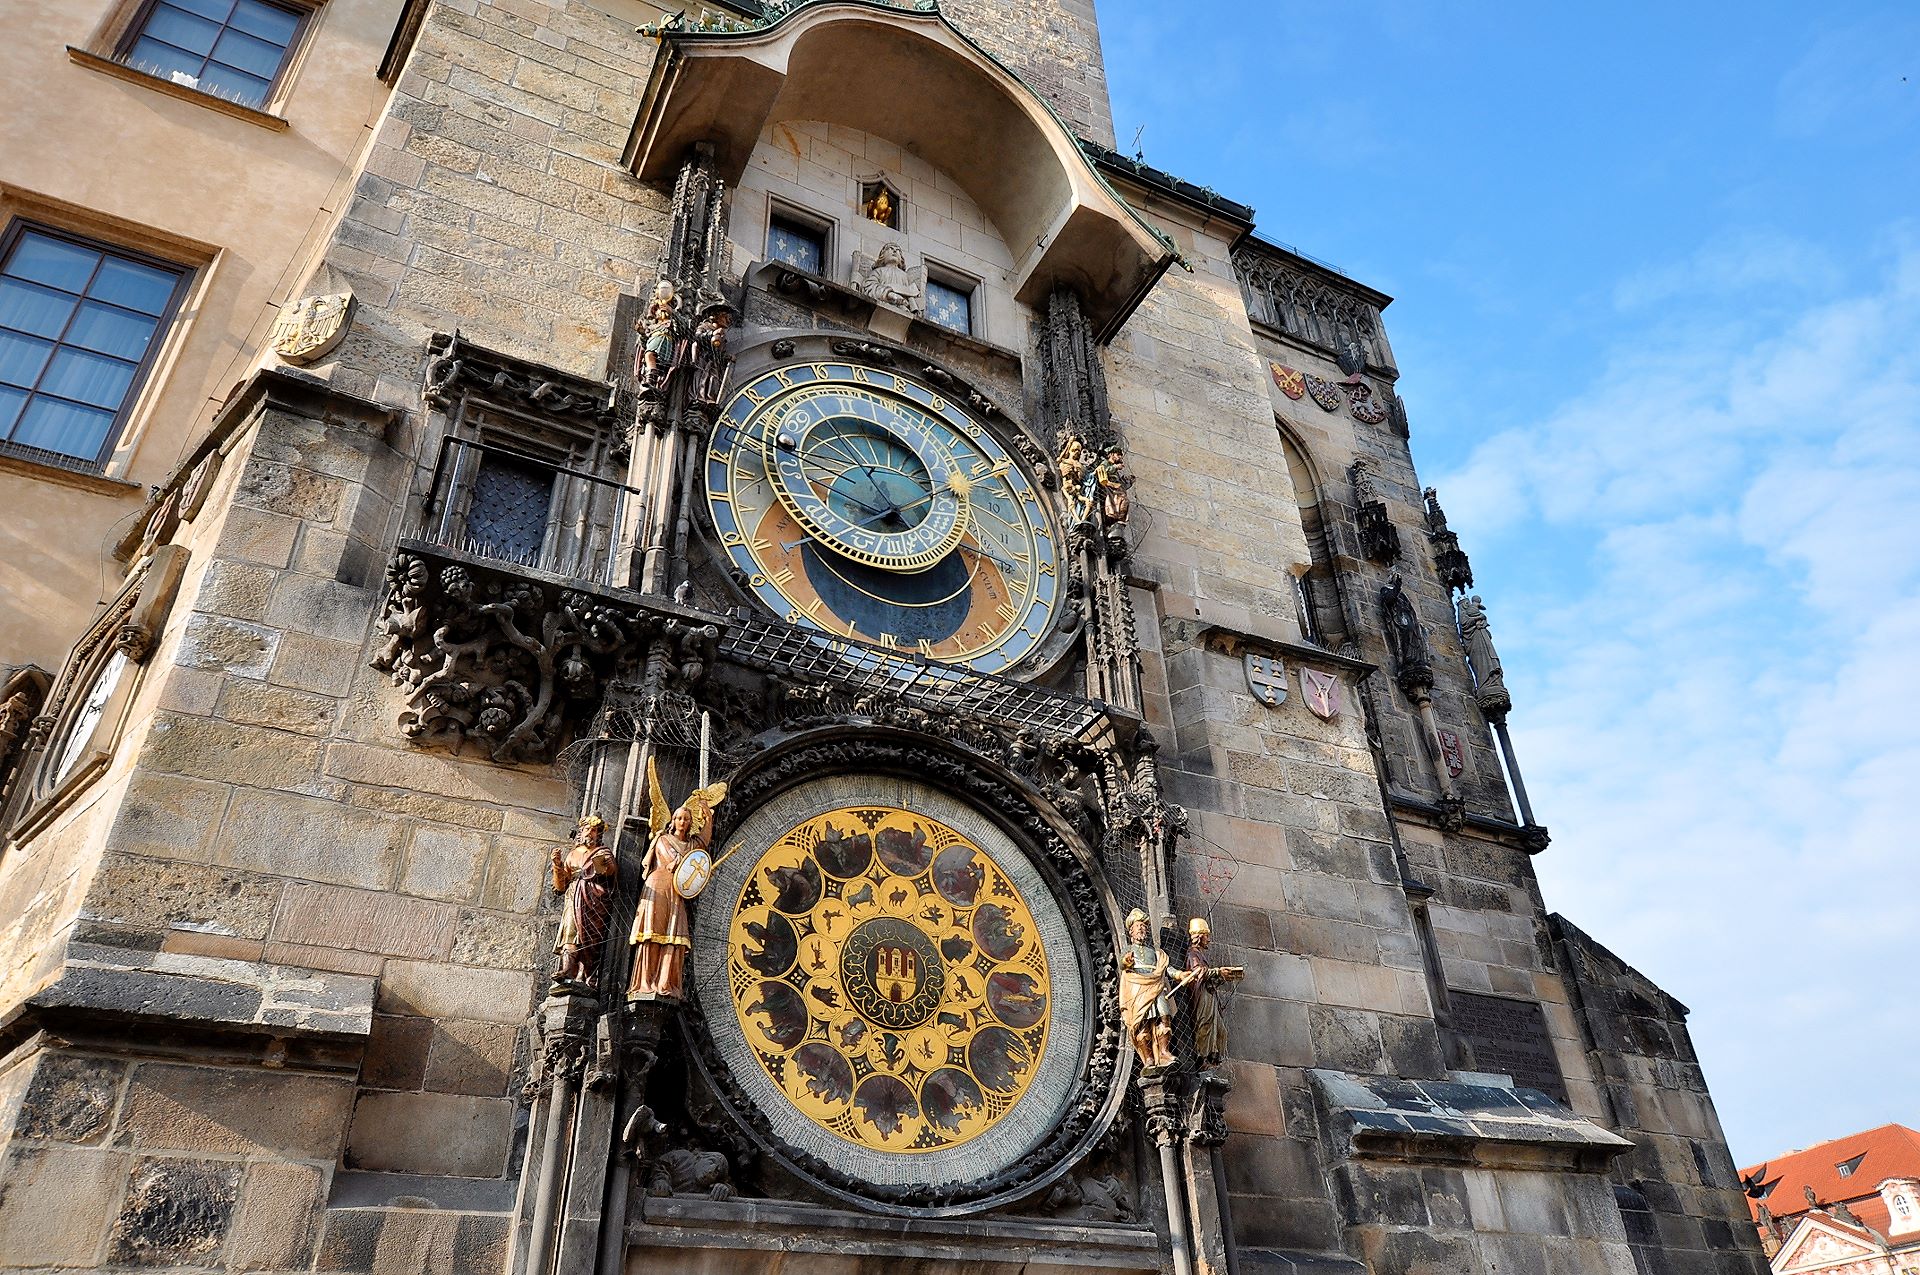 Astronomische Uhr am Altstädter Rathaus